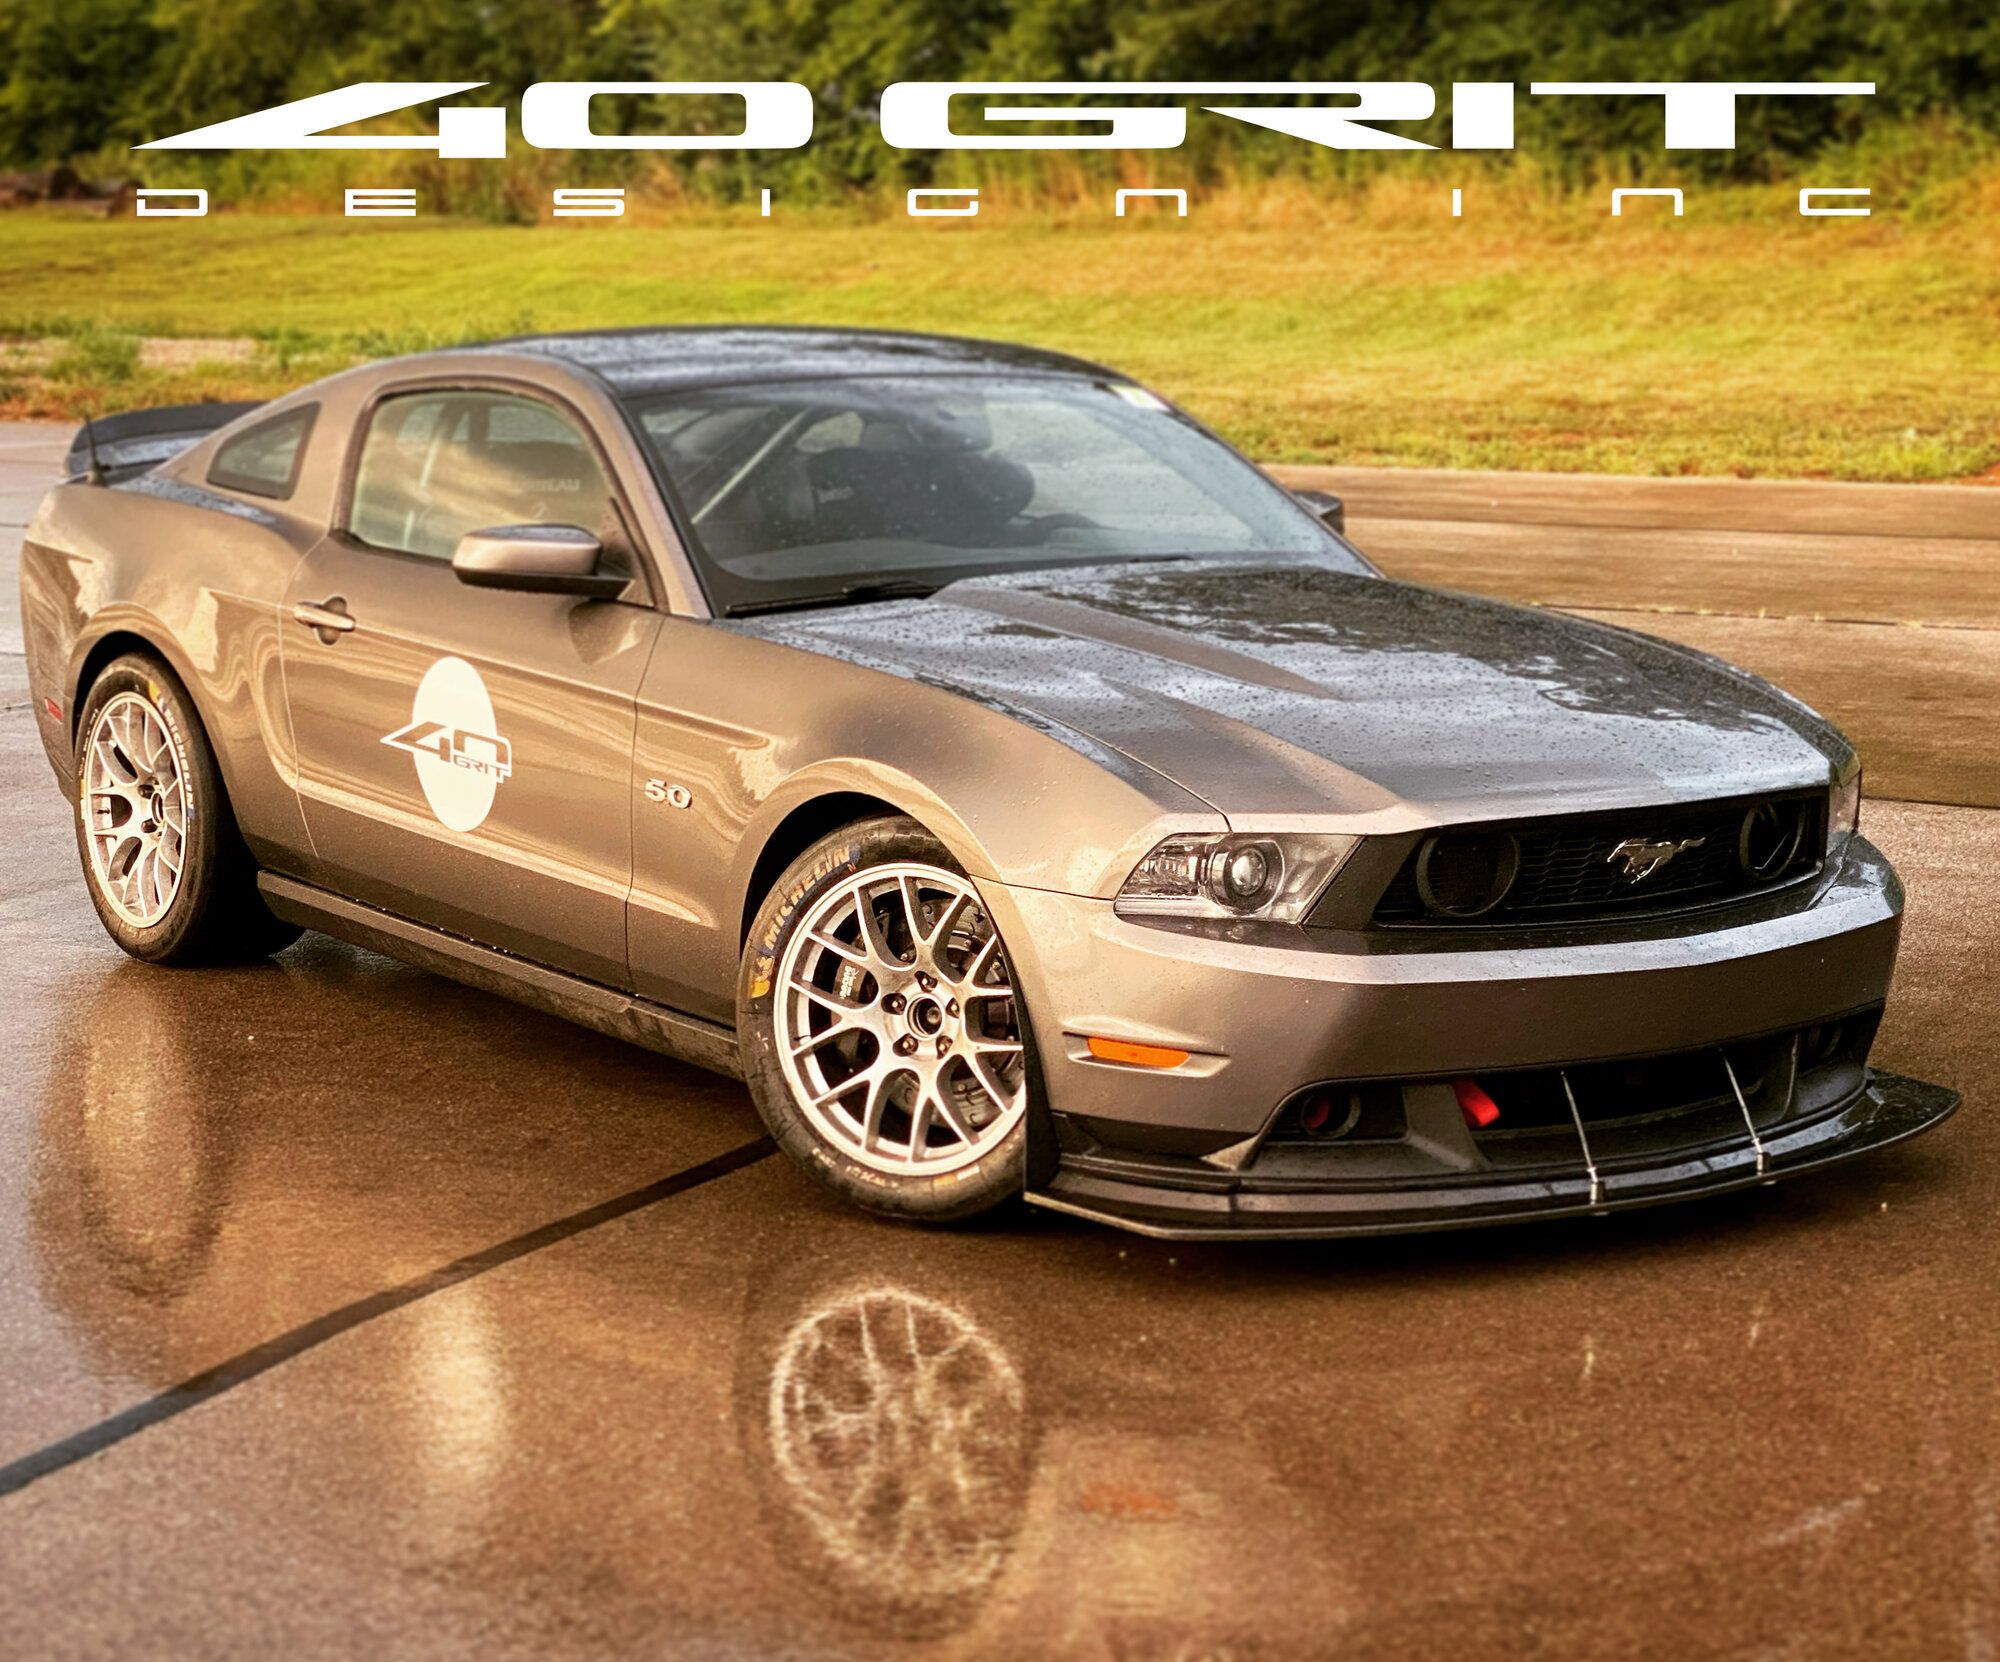 2011 Mustang
GT_50L HPDE/Track -  (40 Grit Design)